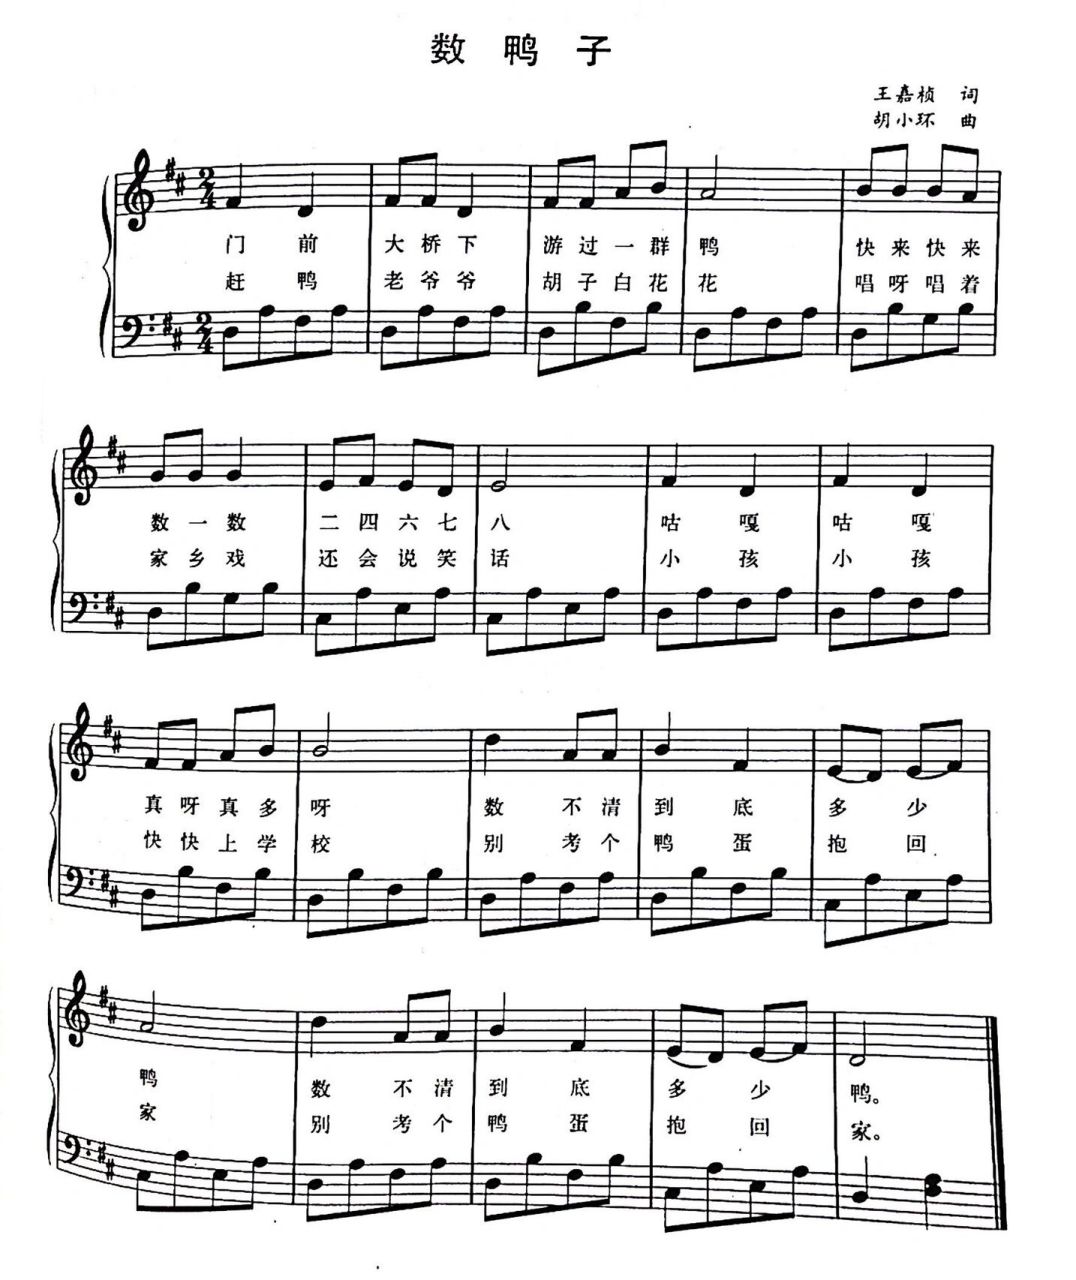 【钢琴】弹奏儿歌:《数鸭子》简谱及五线谱